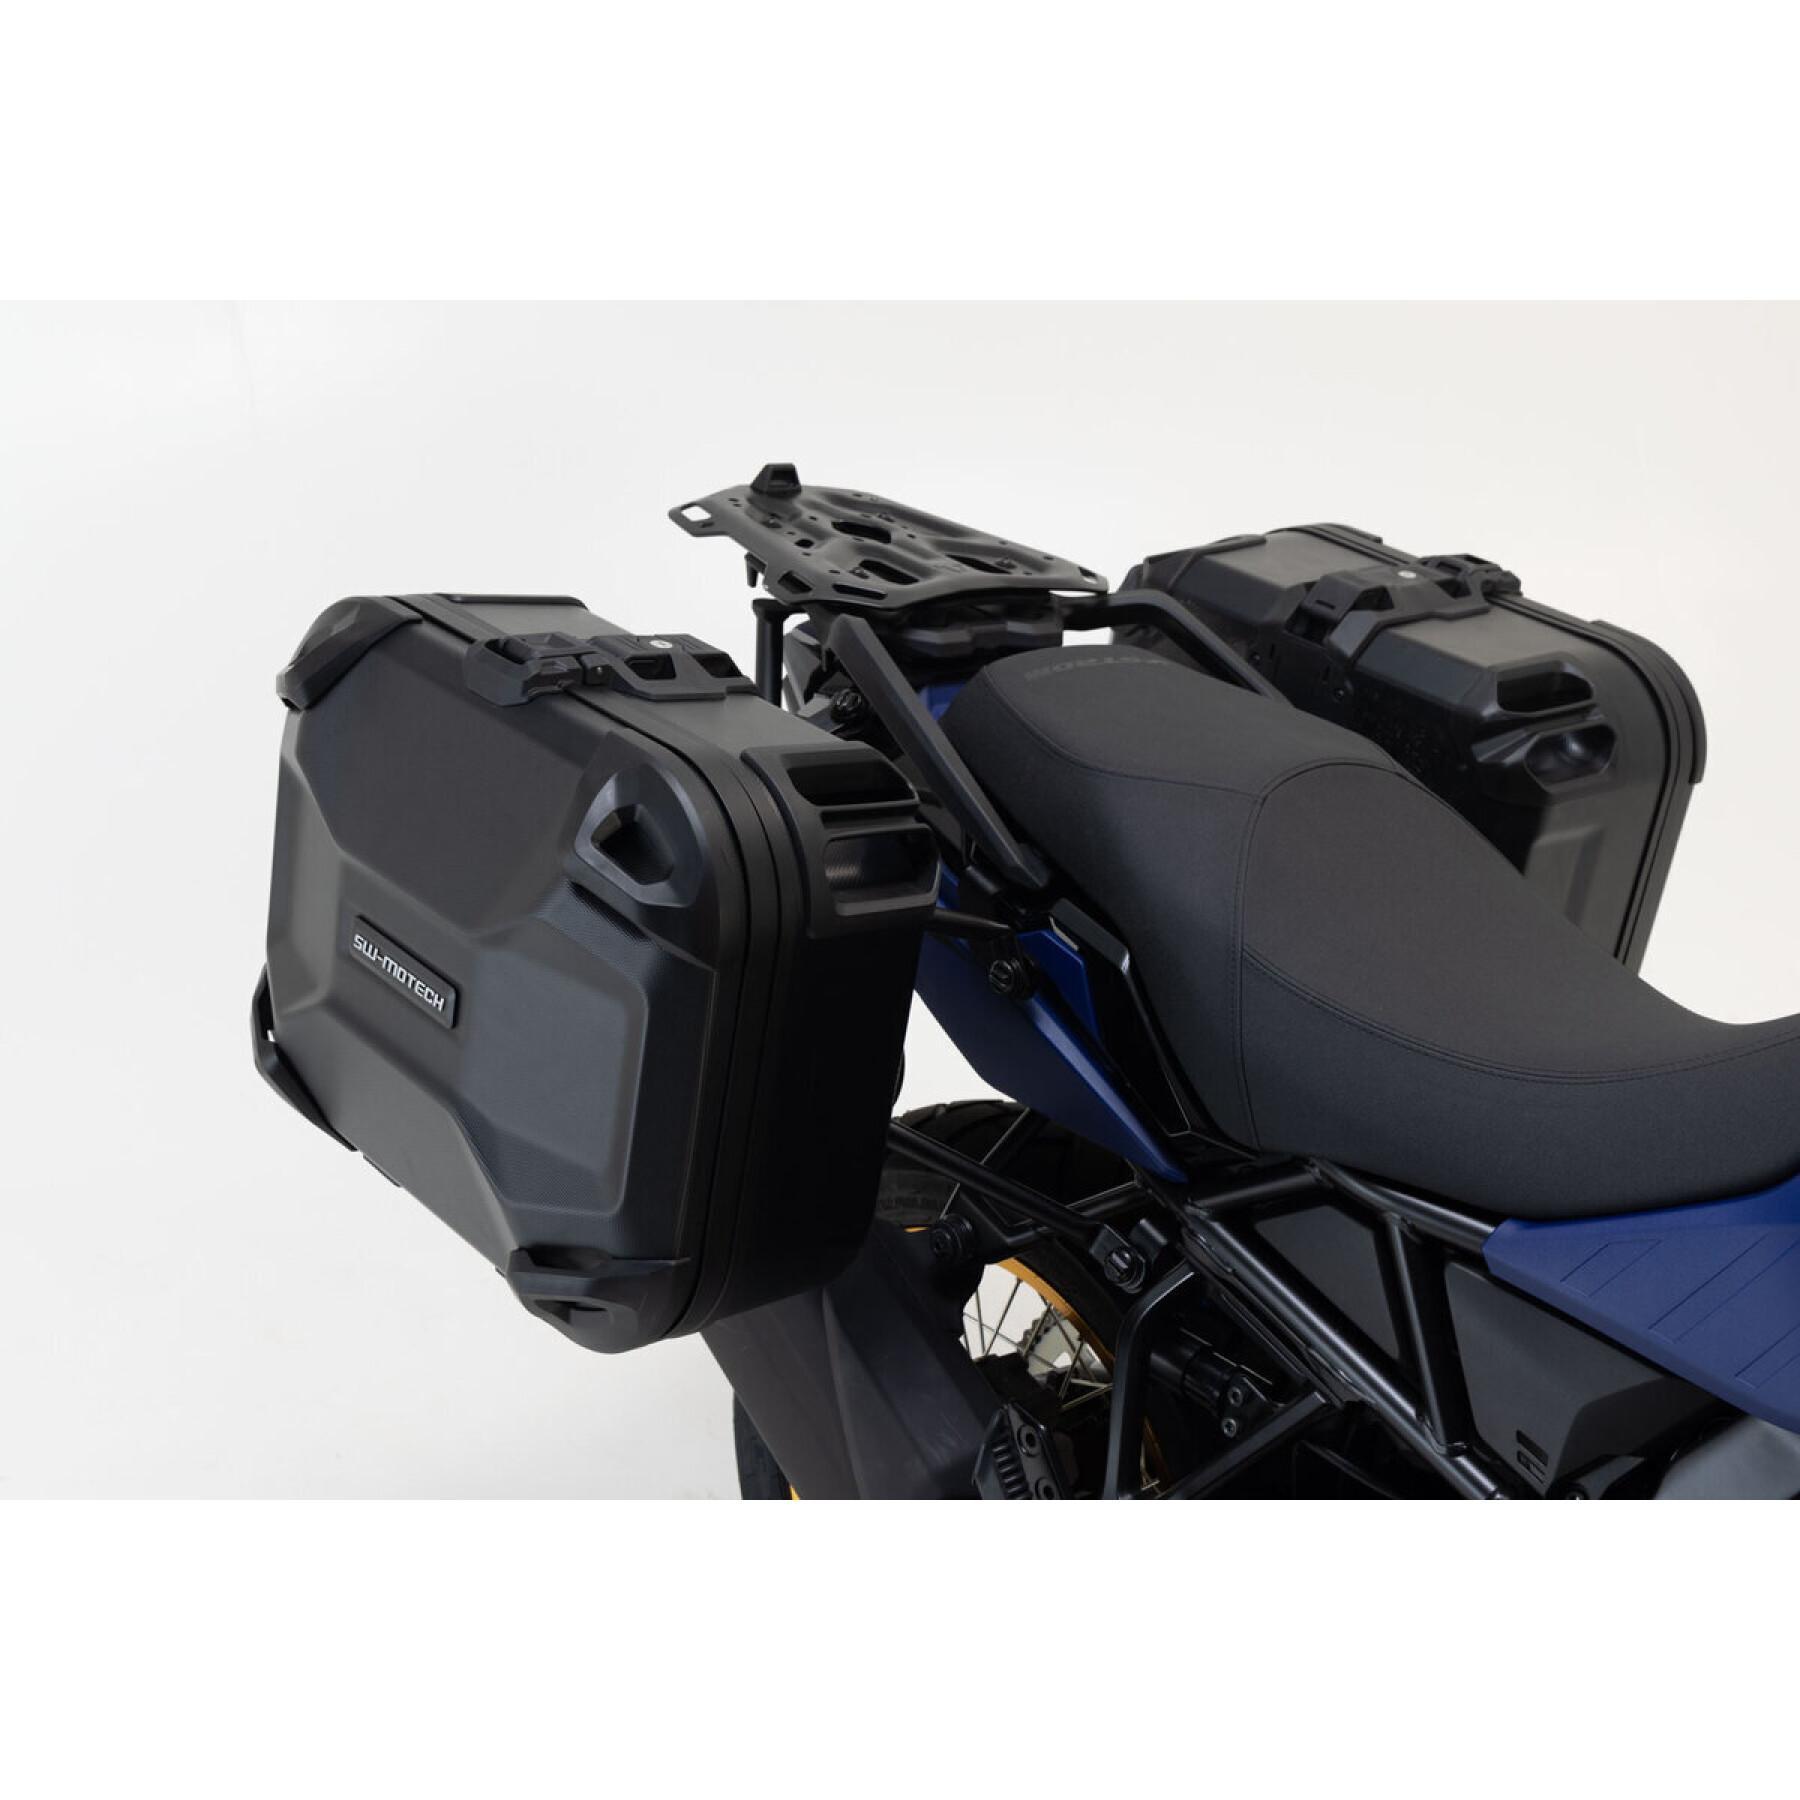 Stijf zijkoffersysteem voor motorfietsen SW-Motech DUSC MT-09 Tracer, Tracer 900/GT 66 L